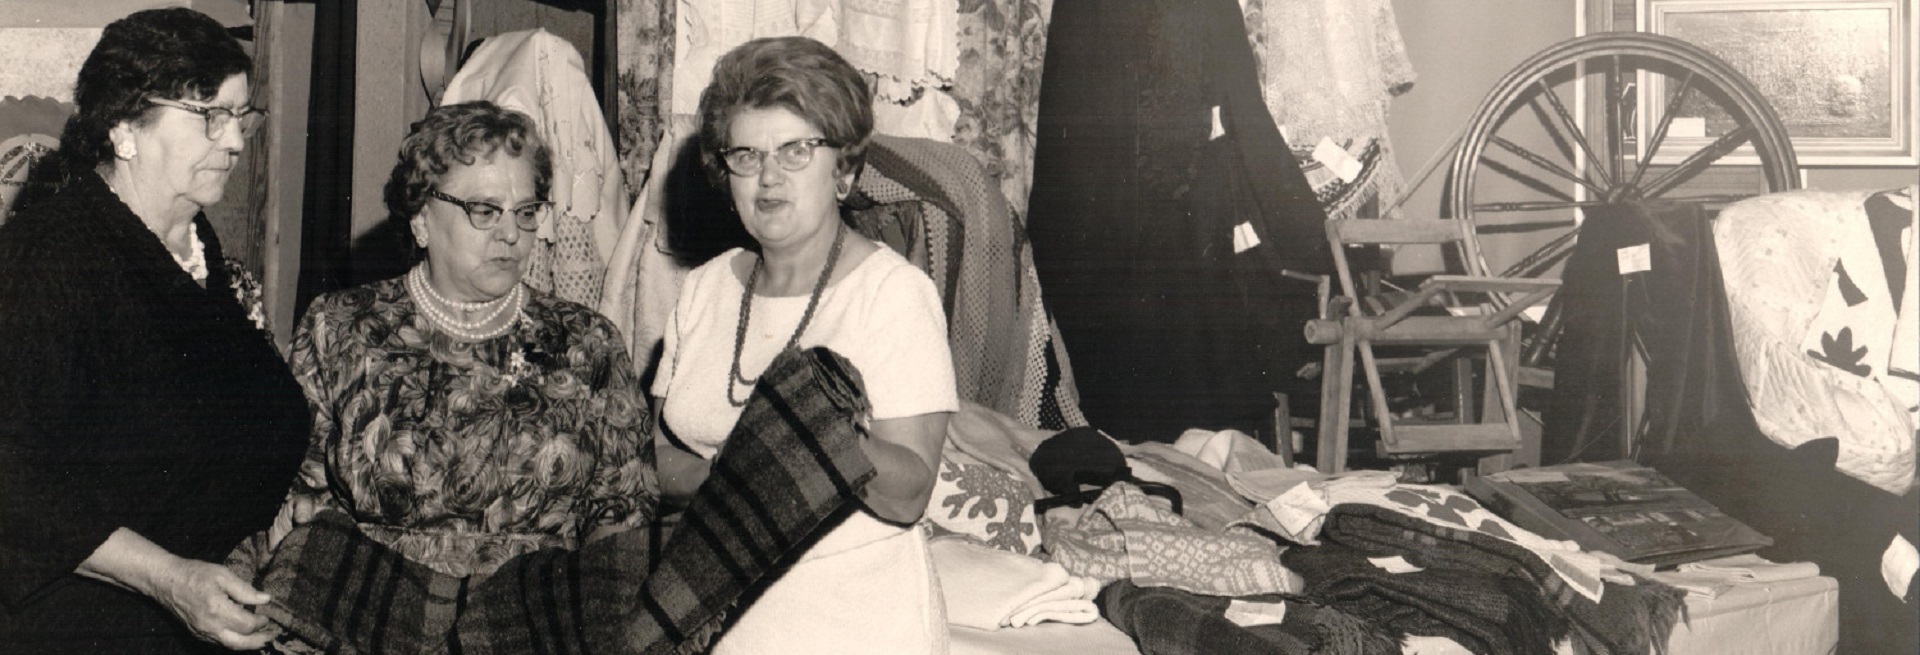 Photographie en noir et blanc de trois femmes examinant une couverture. Derrière elles, une courtepointe et quelques vêtements sont accrochés. À leur droite, des couvertures sont posées sur une table et un rouet est exposé.